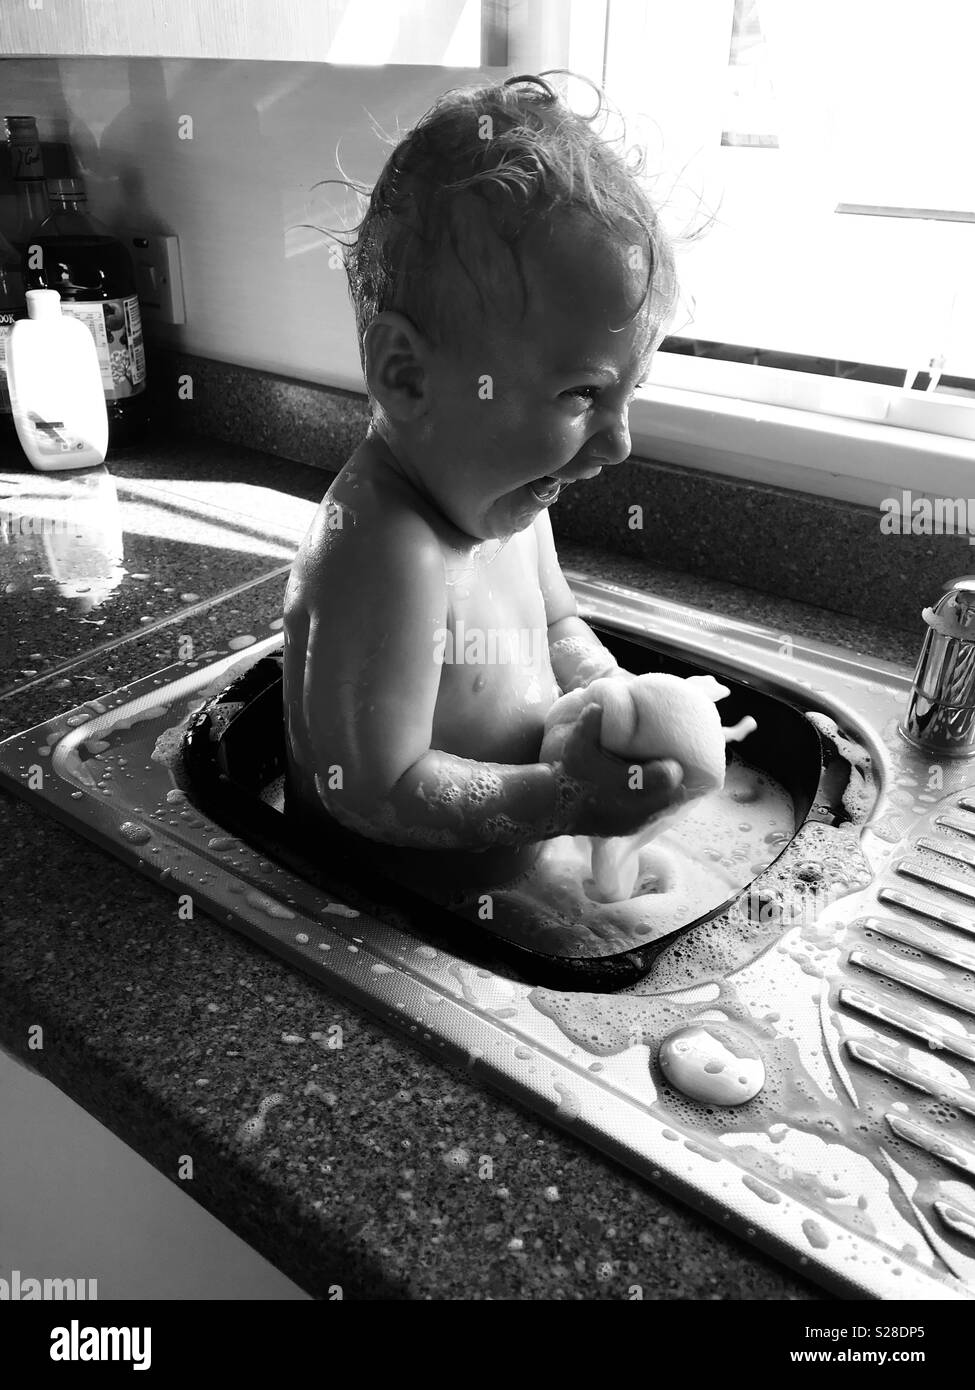 Baby boy having bath in kitchen sink Stock Photo